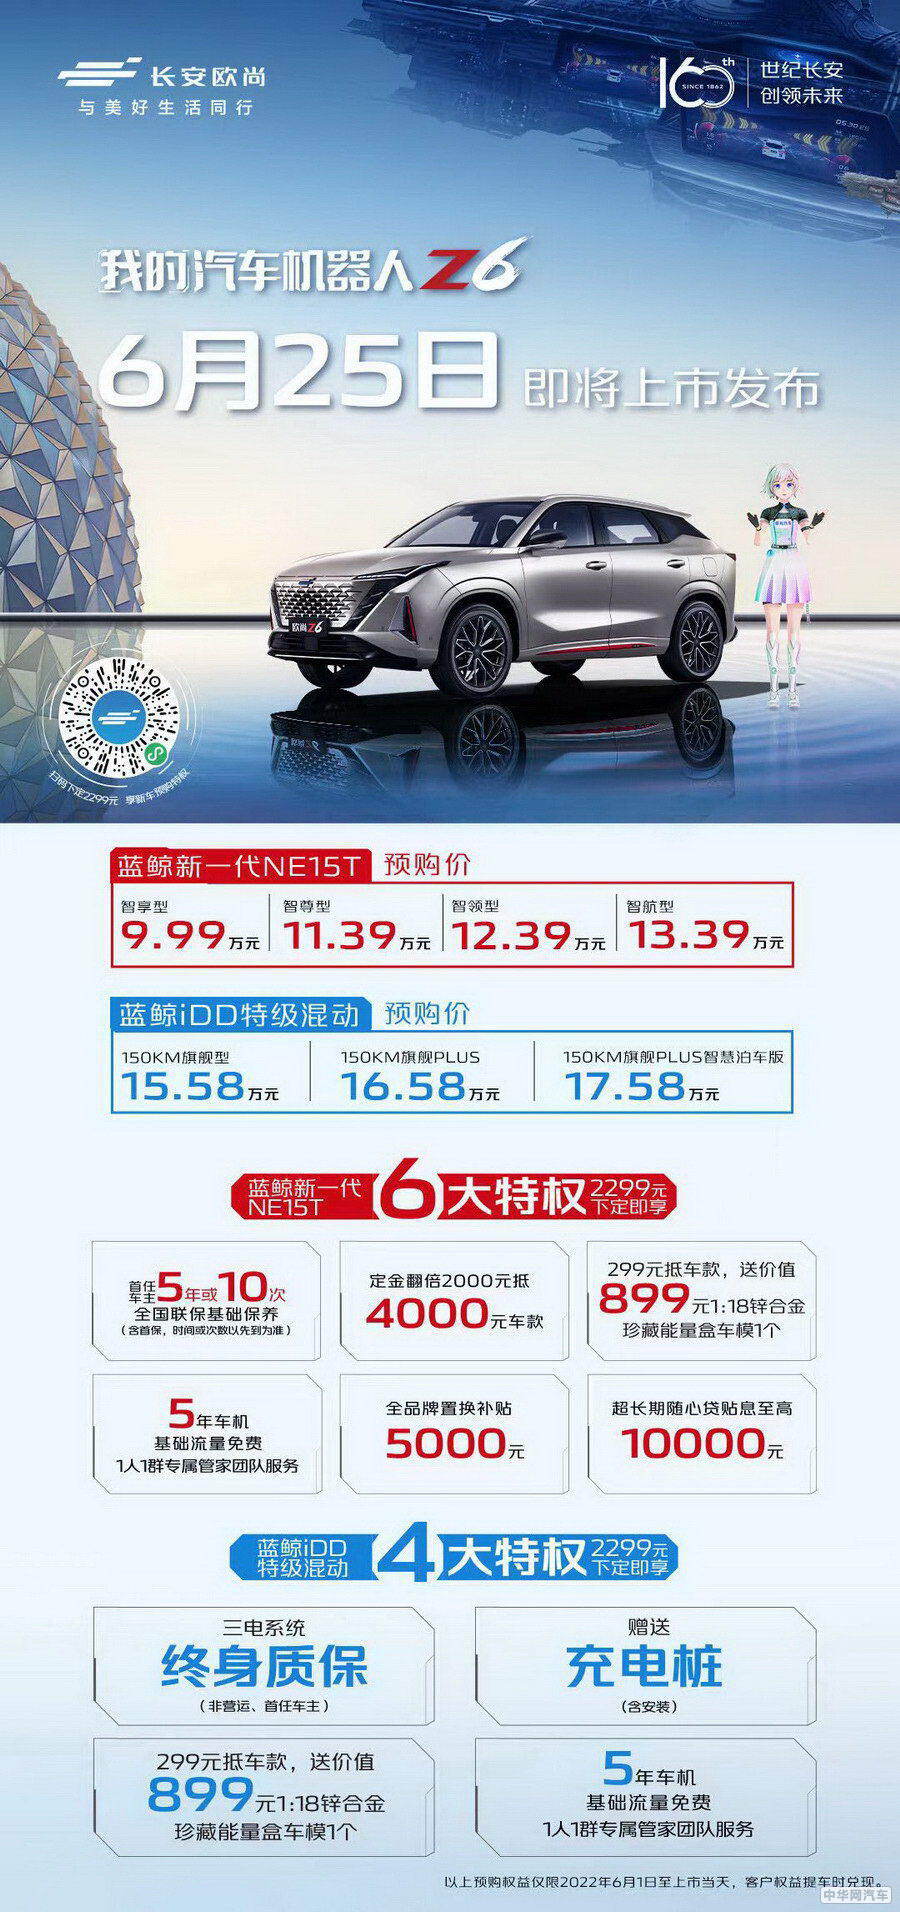 长安欧尚Z6于6月25日上市 燃油混动两种动力